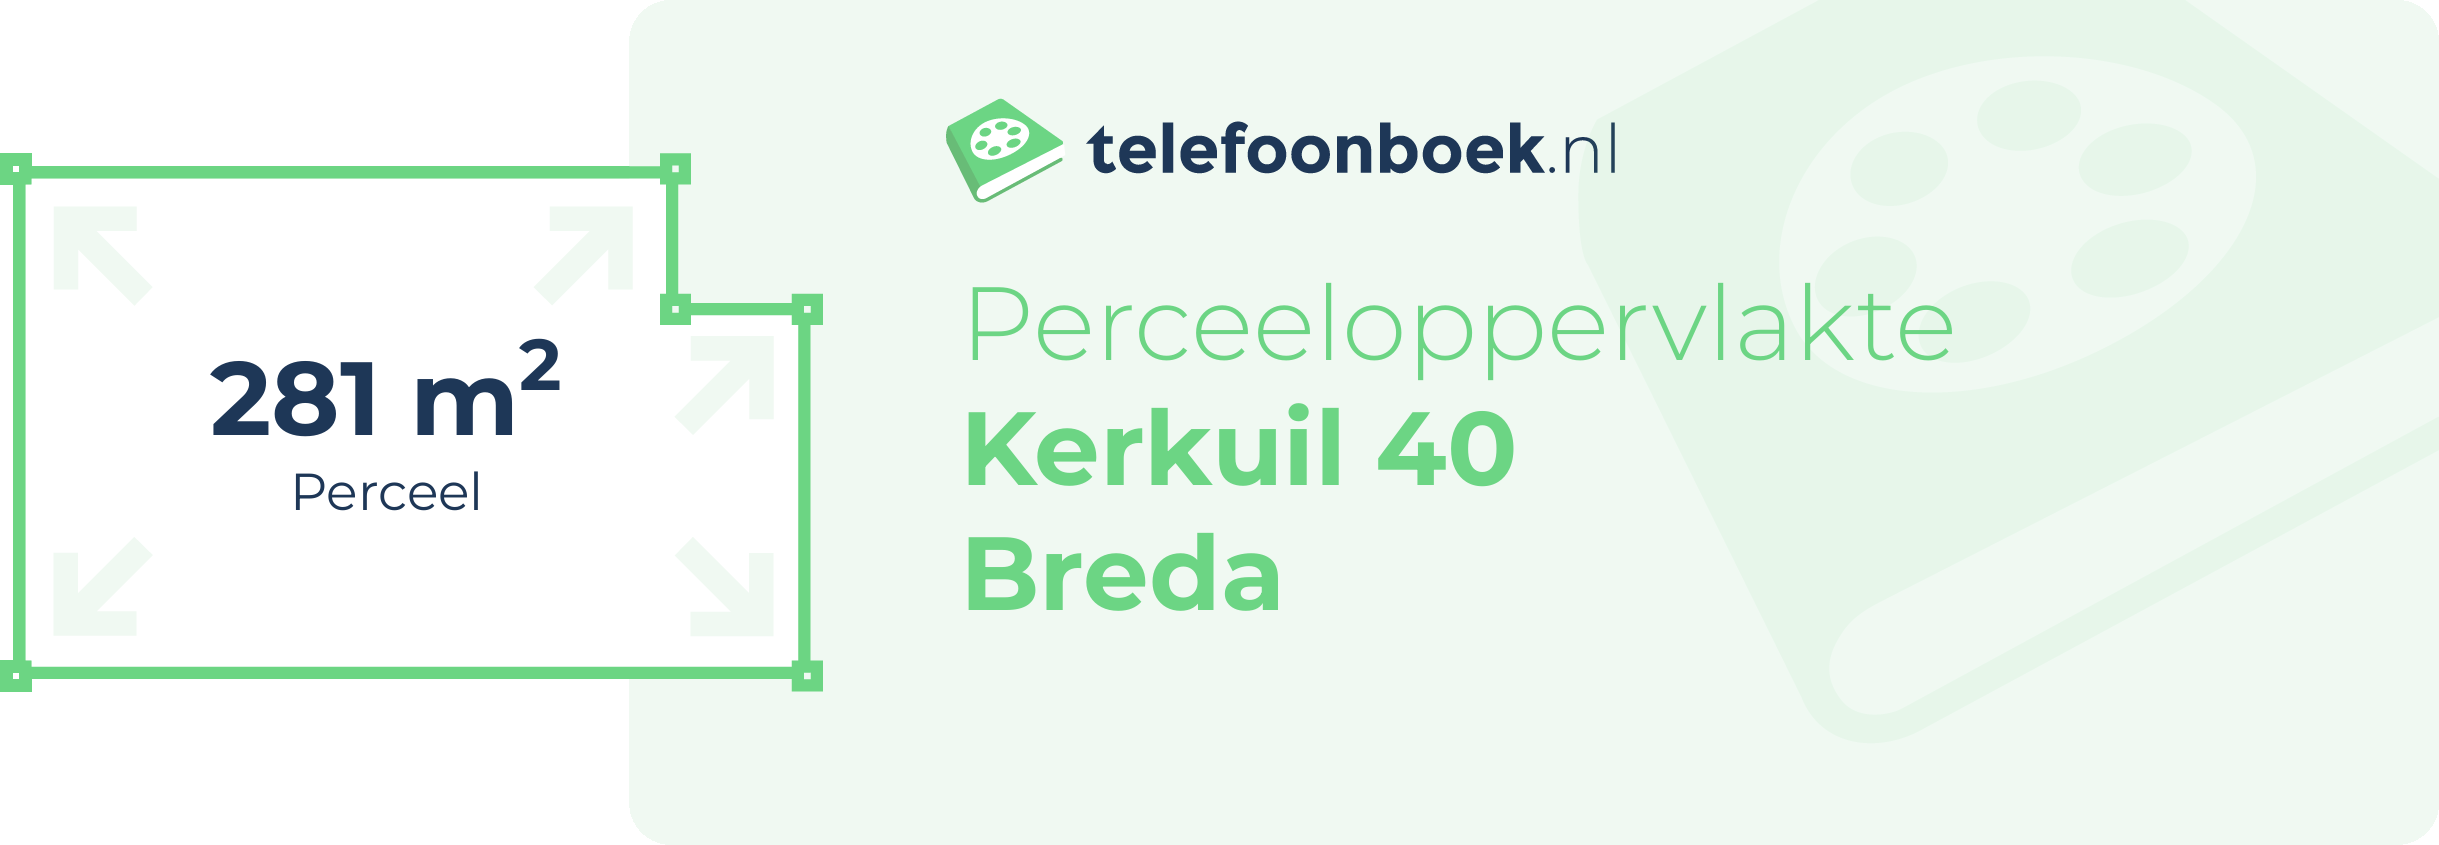 Perceeloppervlakte Kerkuil 40 Breda